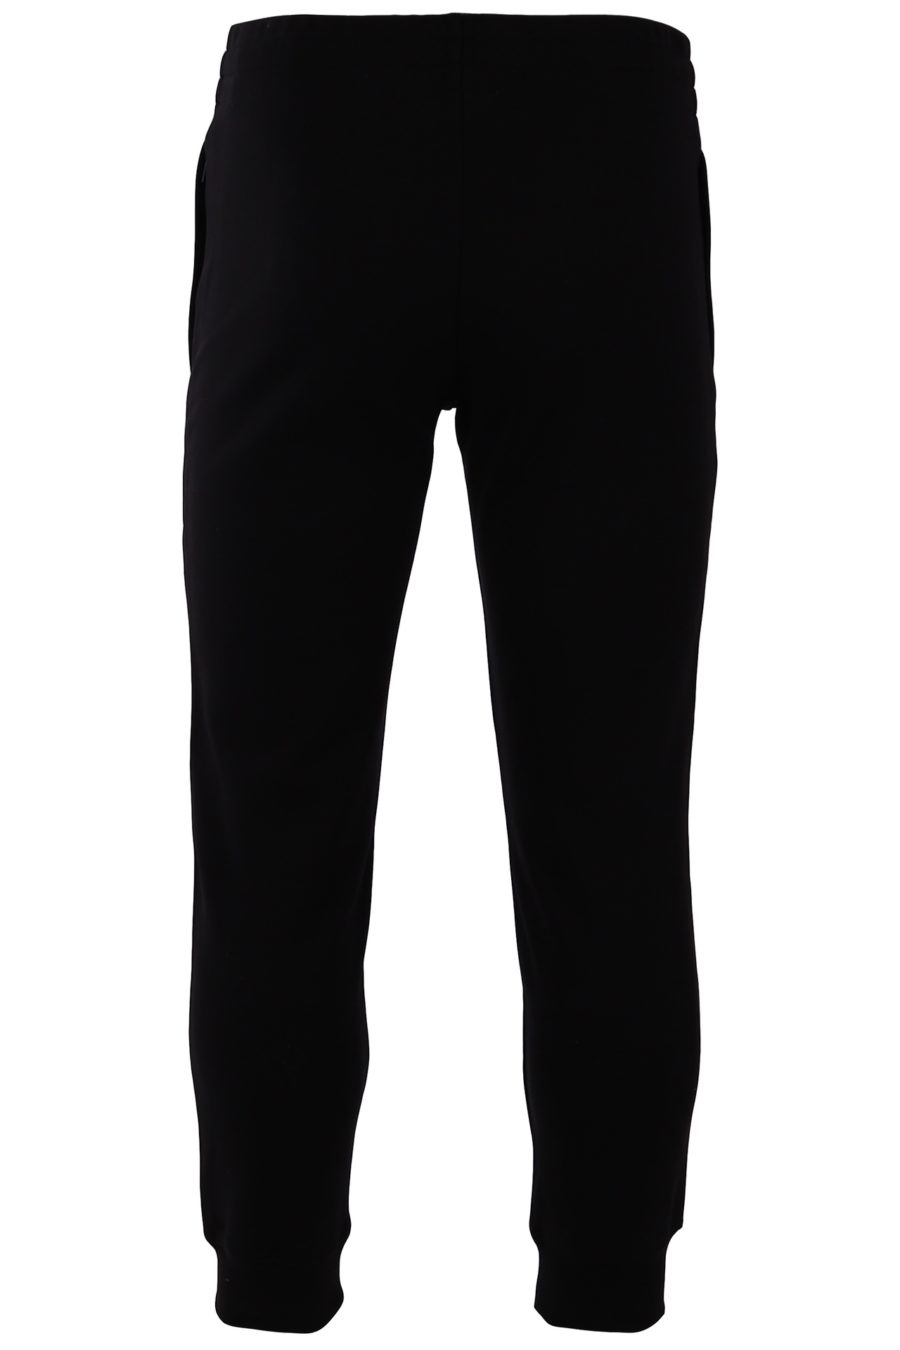 Pantalón Moschino Couture negro con logo grande - 88c5ef859cbc84e9b59fef2e1b26c2fff8180662